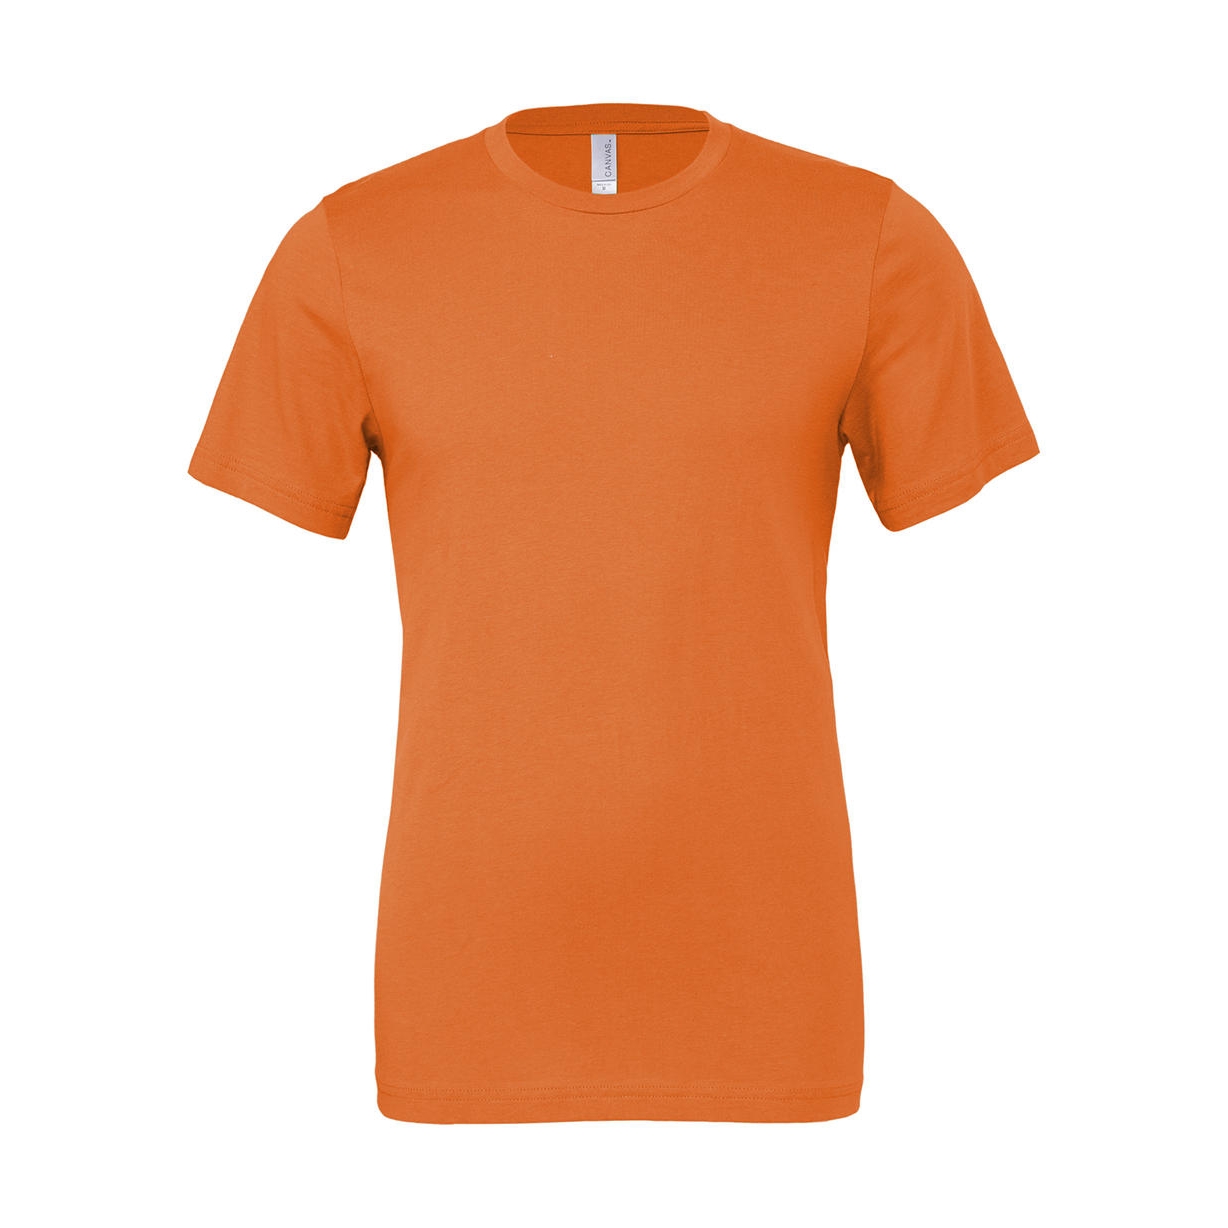 Tričko Bella Jersey - oranžové, XS